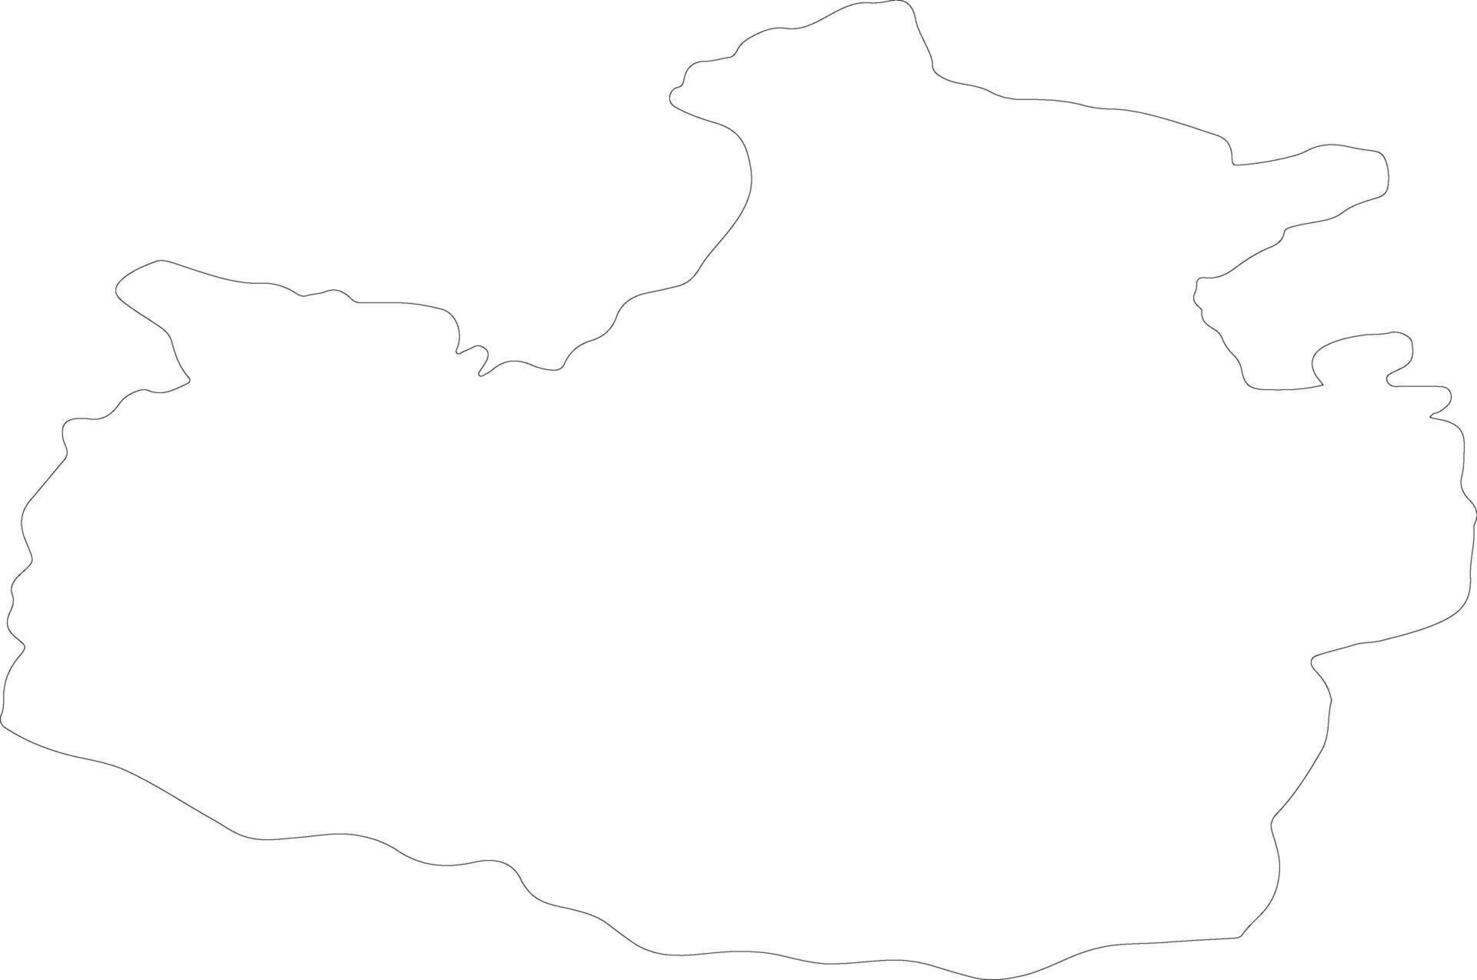 karachay-cherkess Russia schema carta geografica vettore